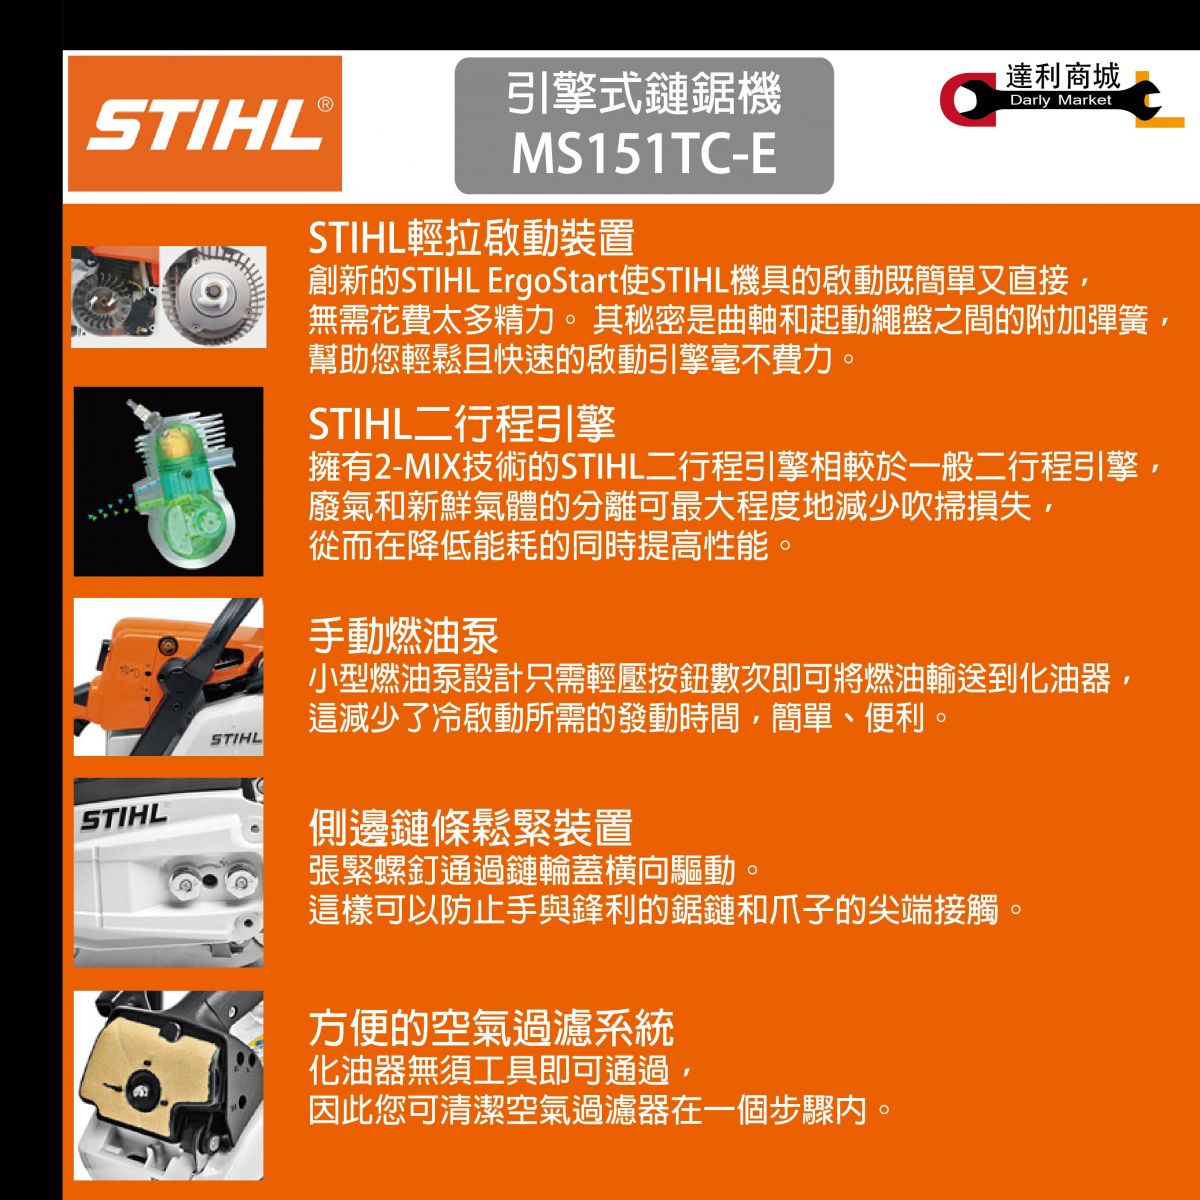 德國STIHL】MS151TC 二行程引擎式單手鏈鋸機10吋12吋輕拉型| 產品介紹 